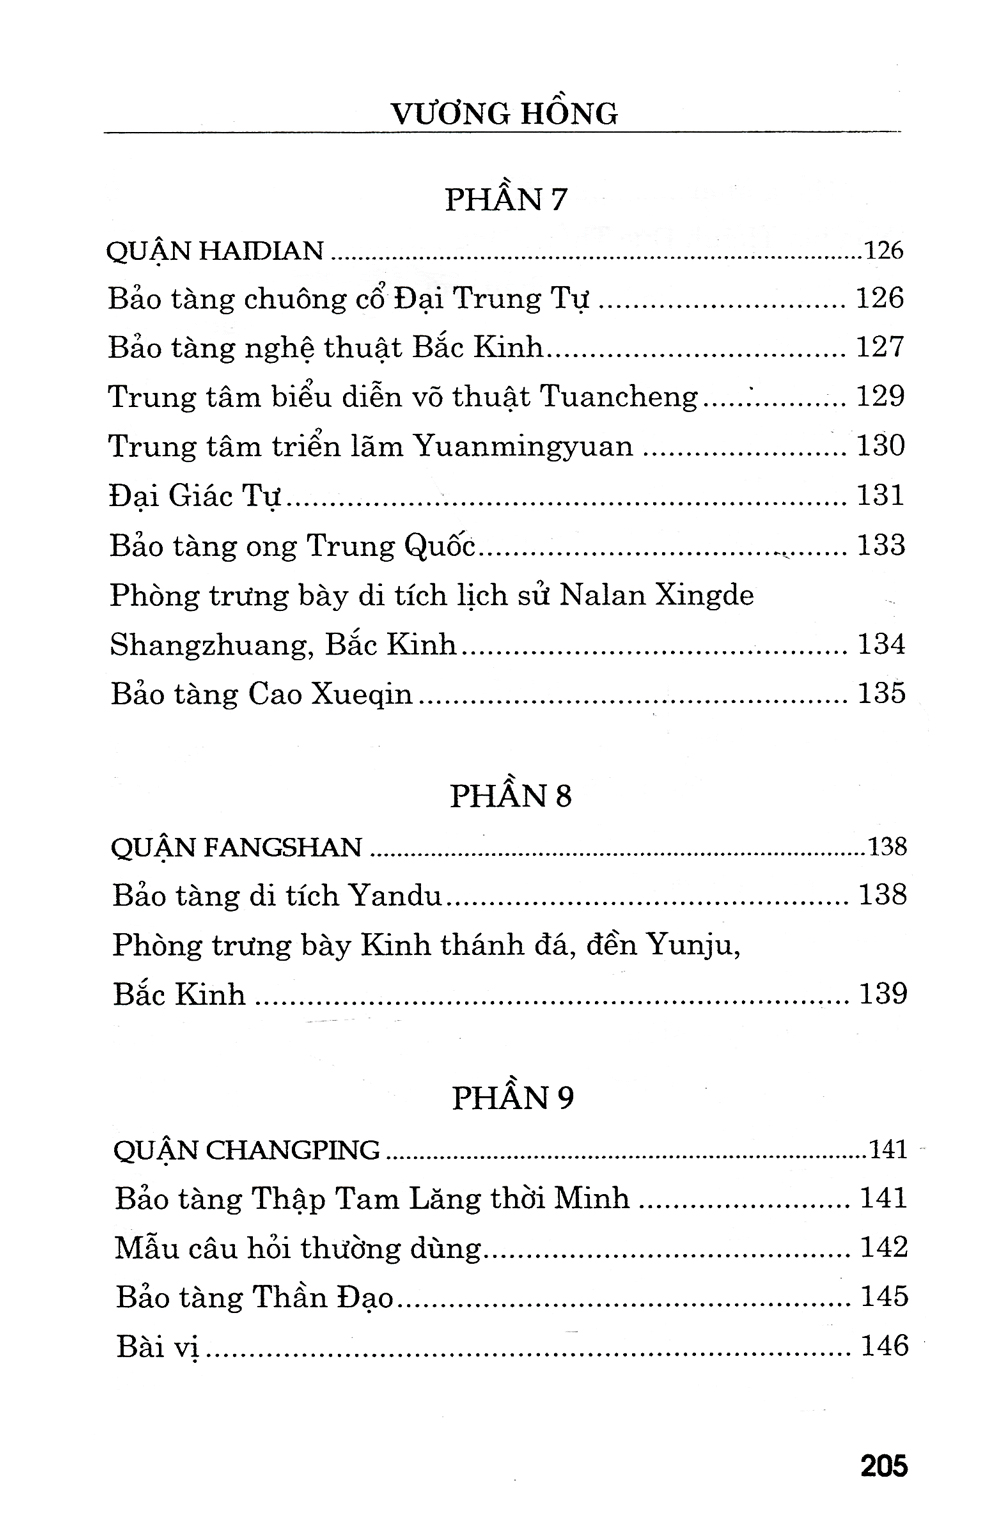 Giao Tiếp Tiếng Anh Trong Dịch Vụ Văn Hóa, Viện Bảo Tàng Kèm CD PDF